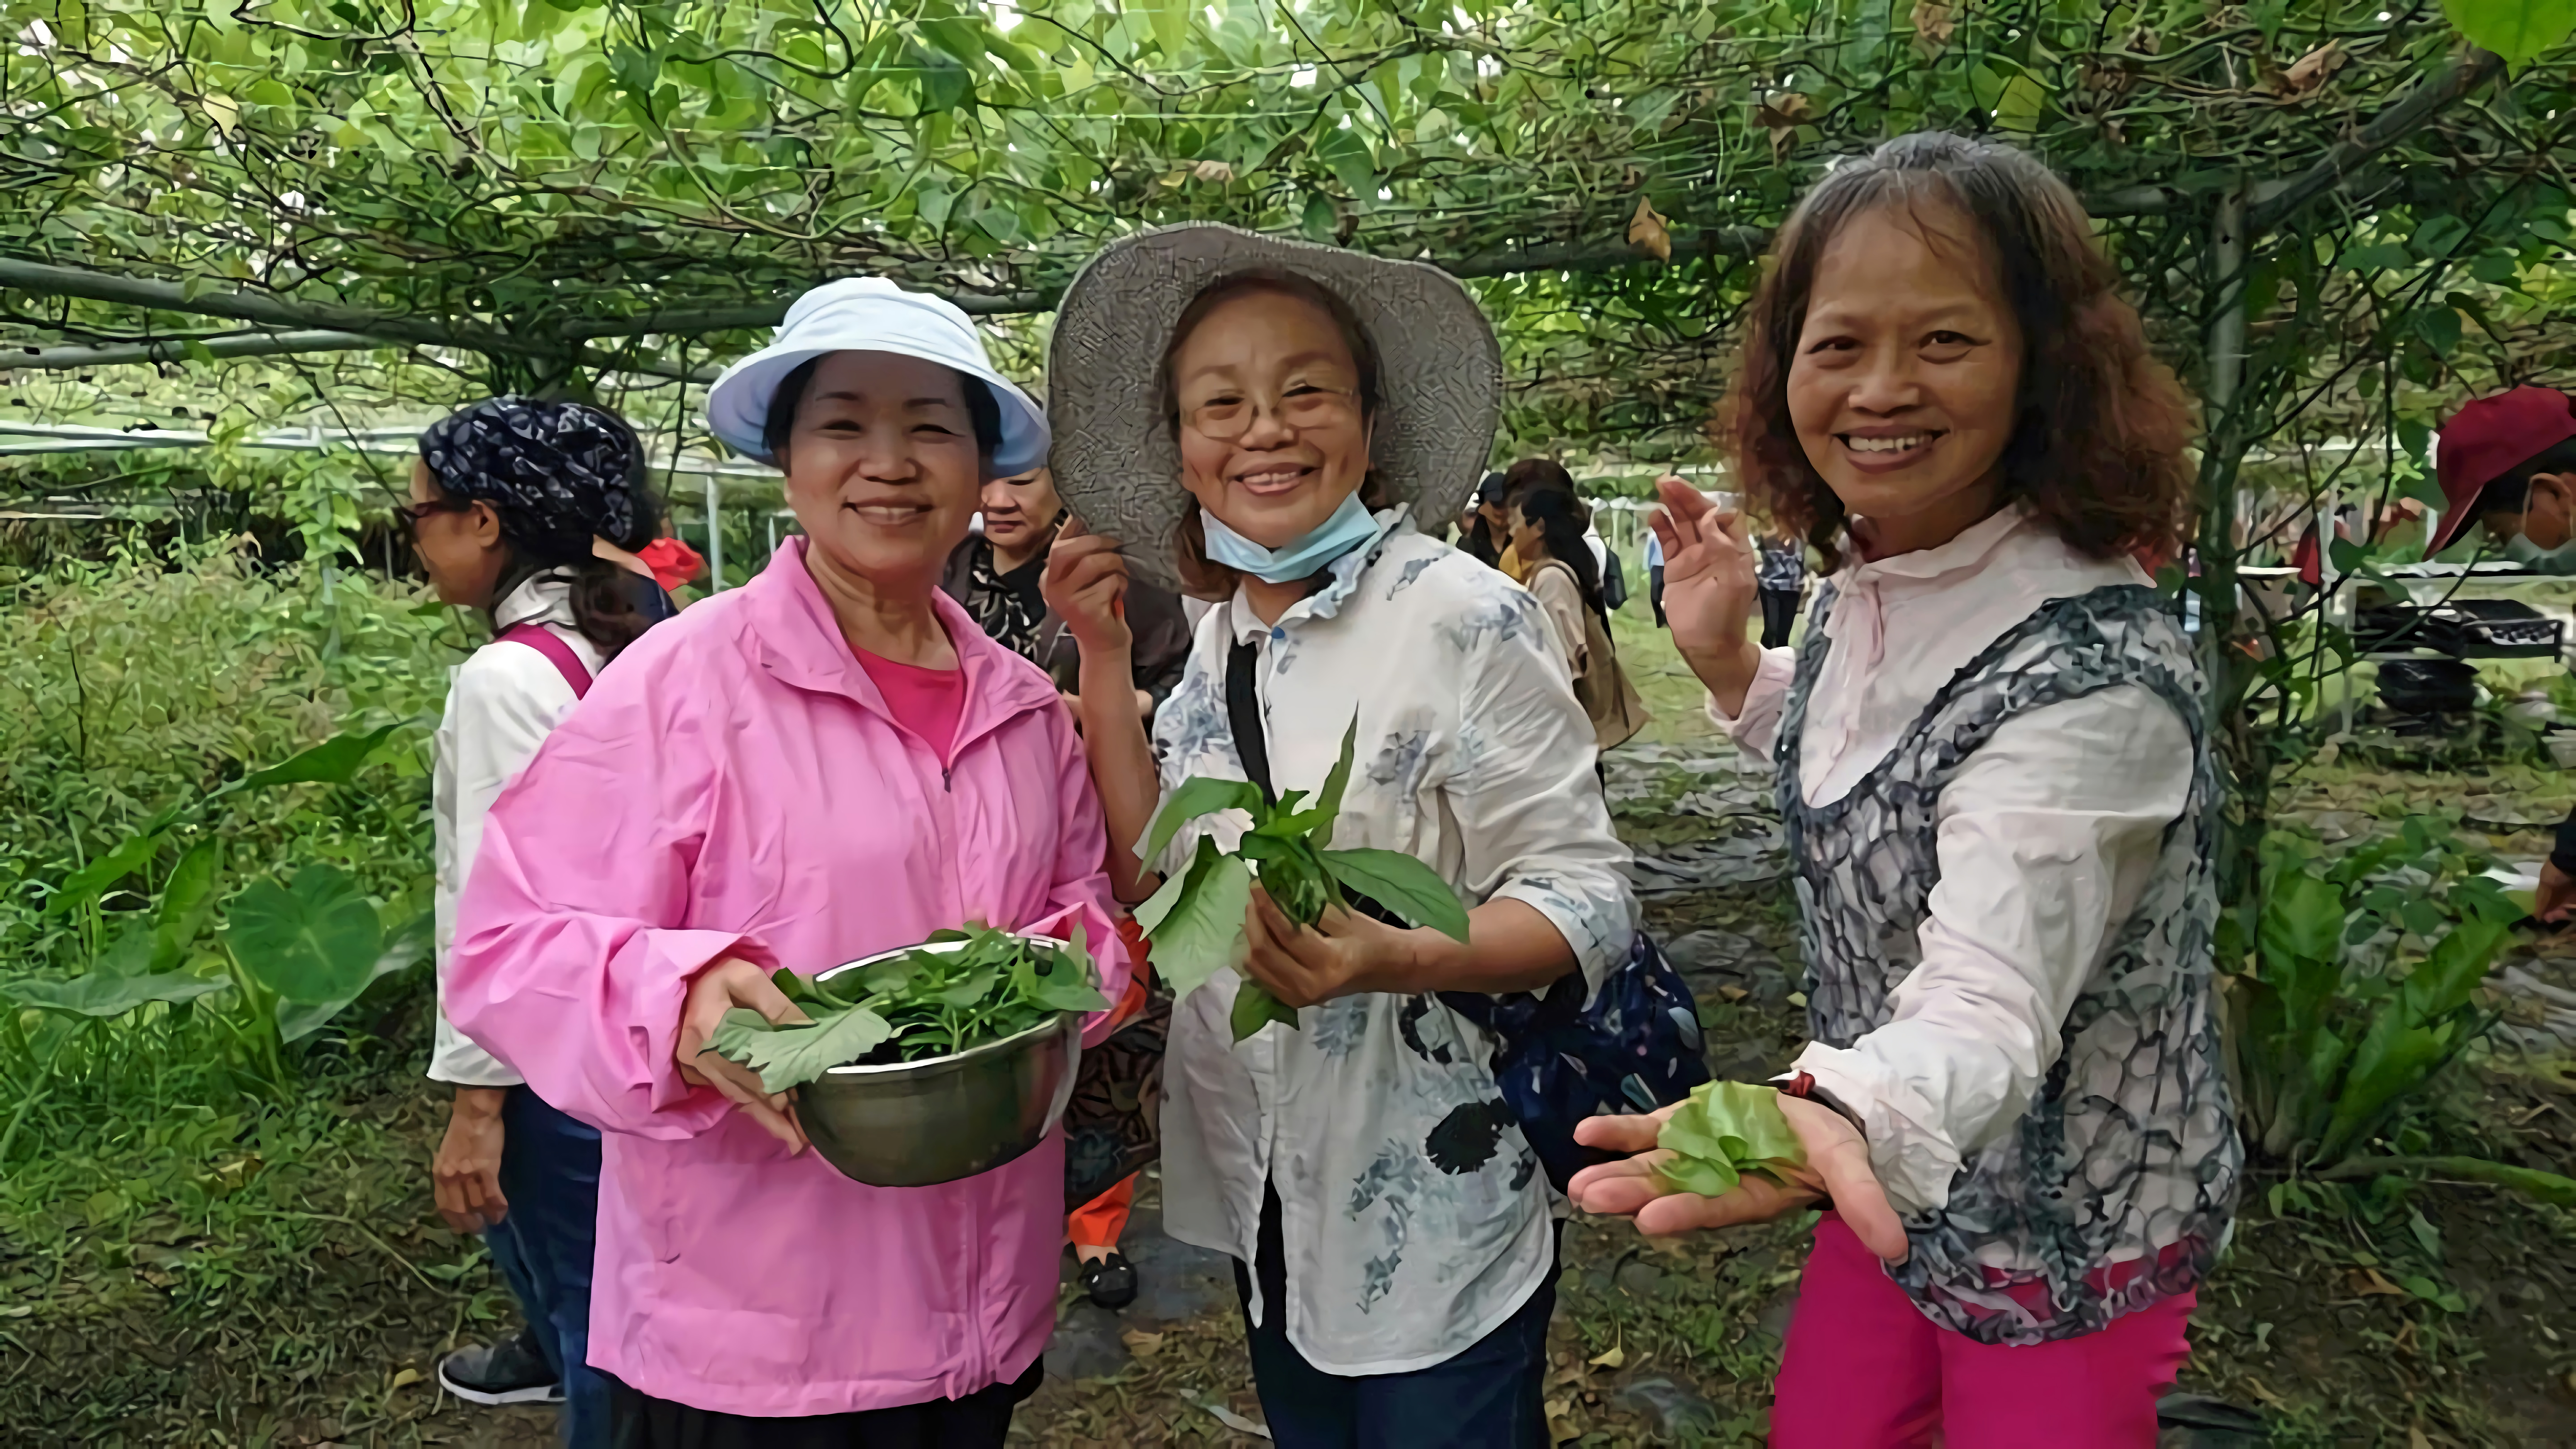 體驗野菜摘採是食農教育的一環。